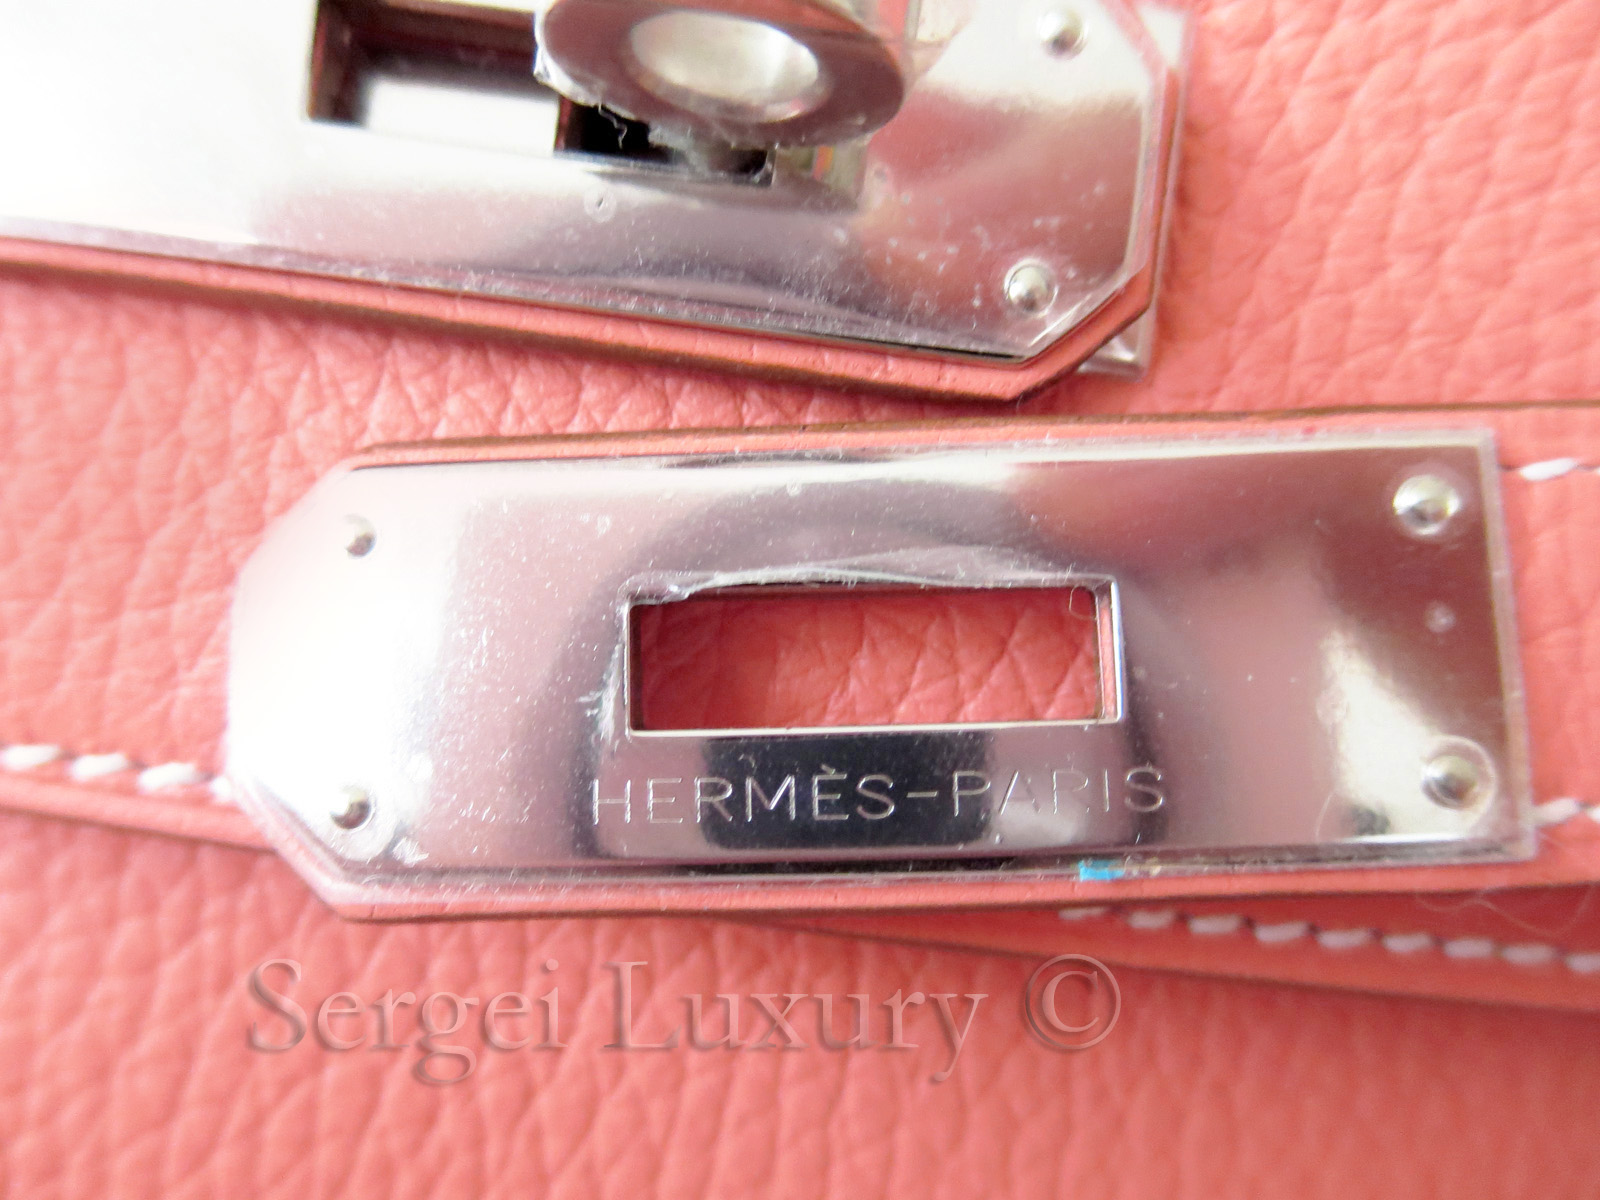 Hermes, Bags, 0 Authentic Hermes Kelly 32